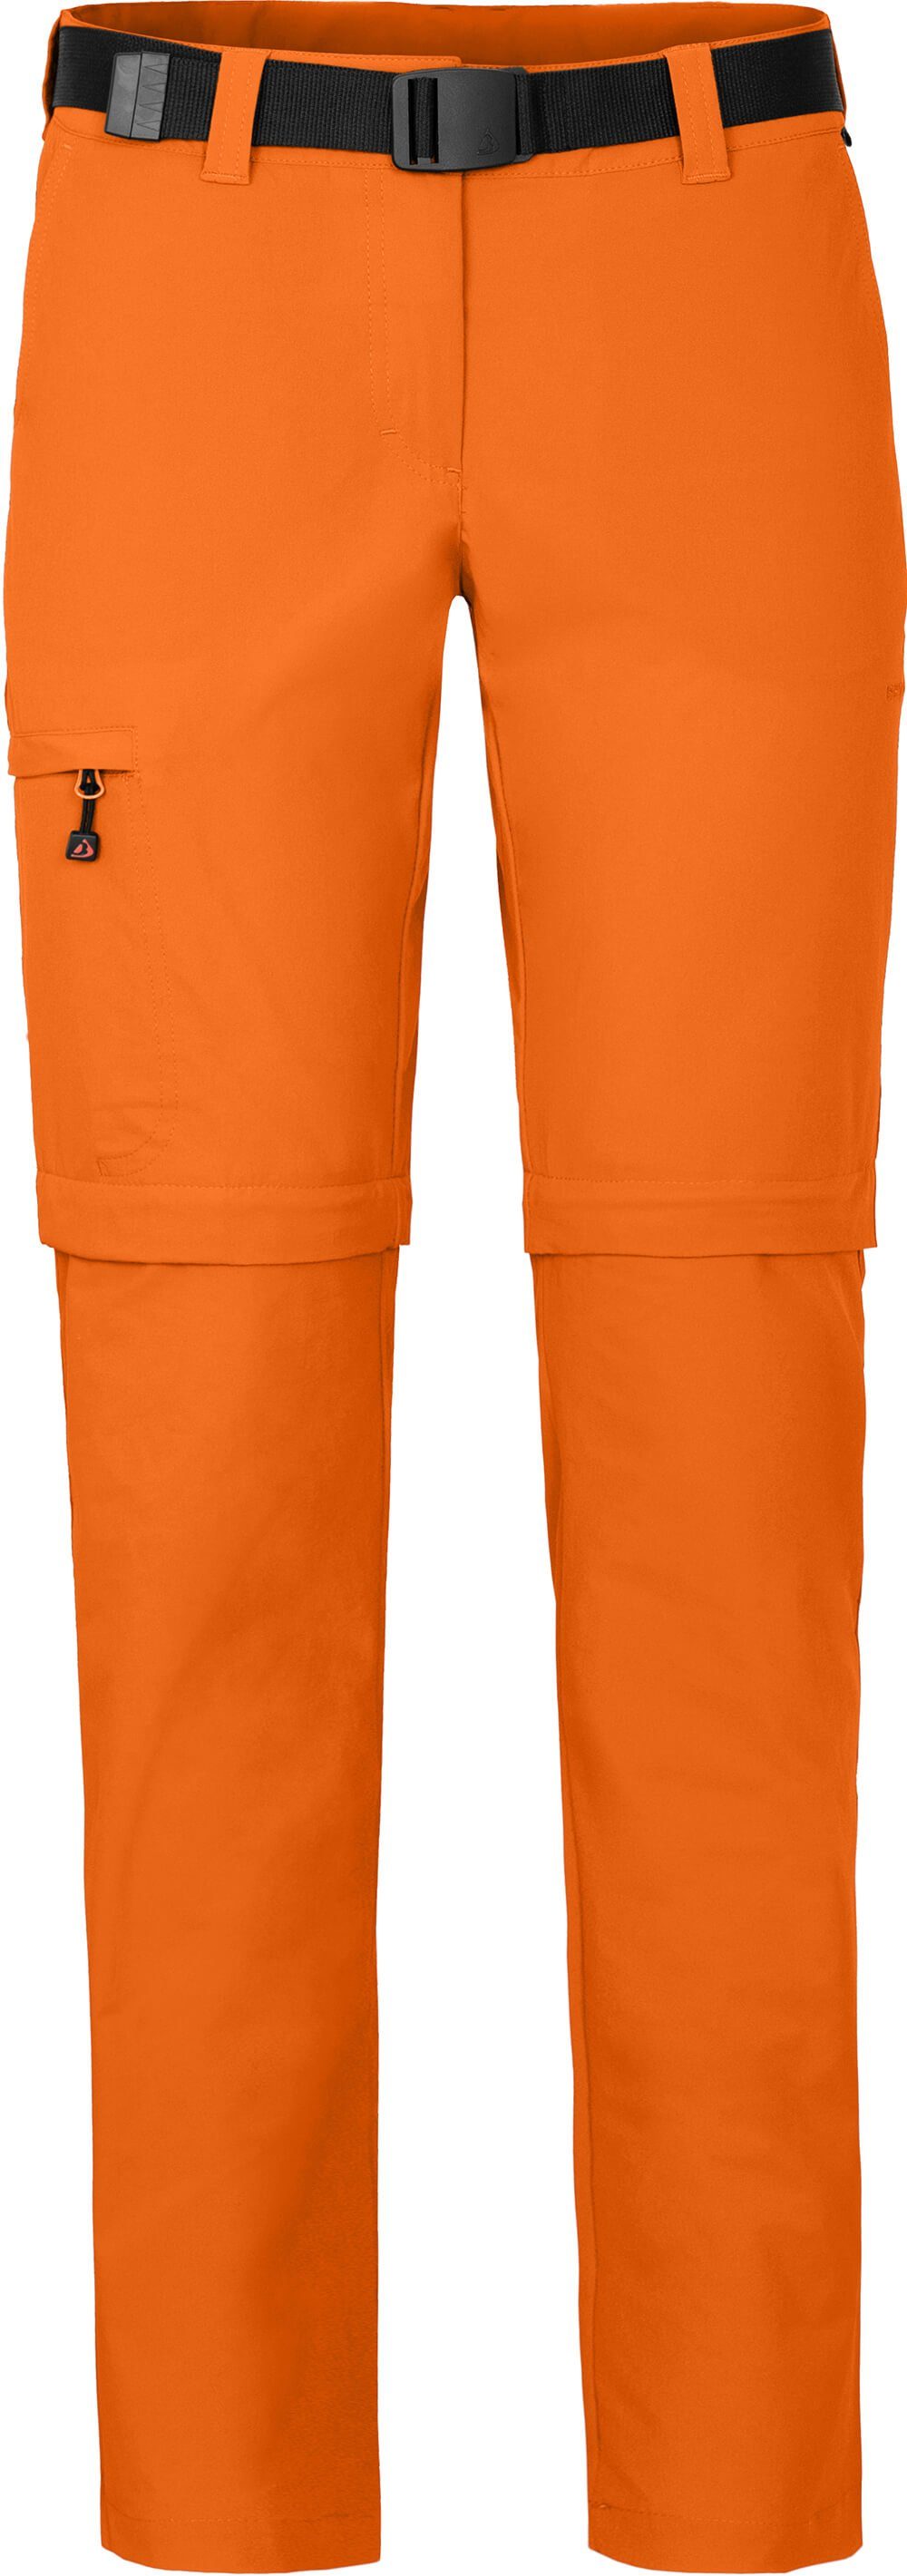 Wanderhose, pflegeleicht, Normalgrößen, Zip-off-Hose vielseitig, BENNETT Damen Bergson Zipp-Off (slim) orange